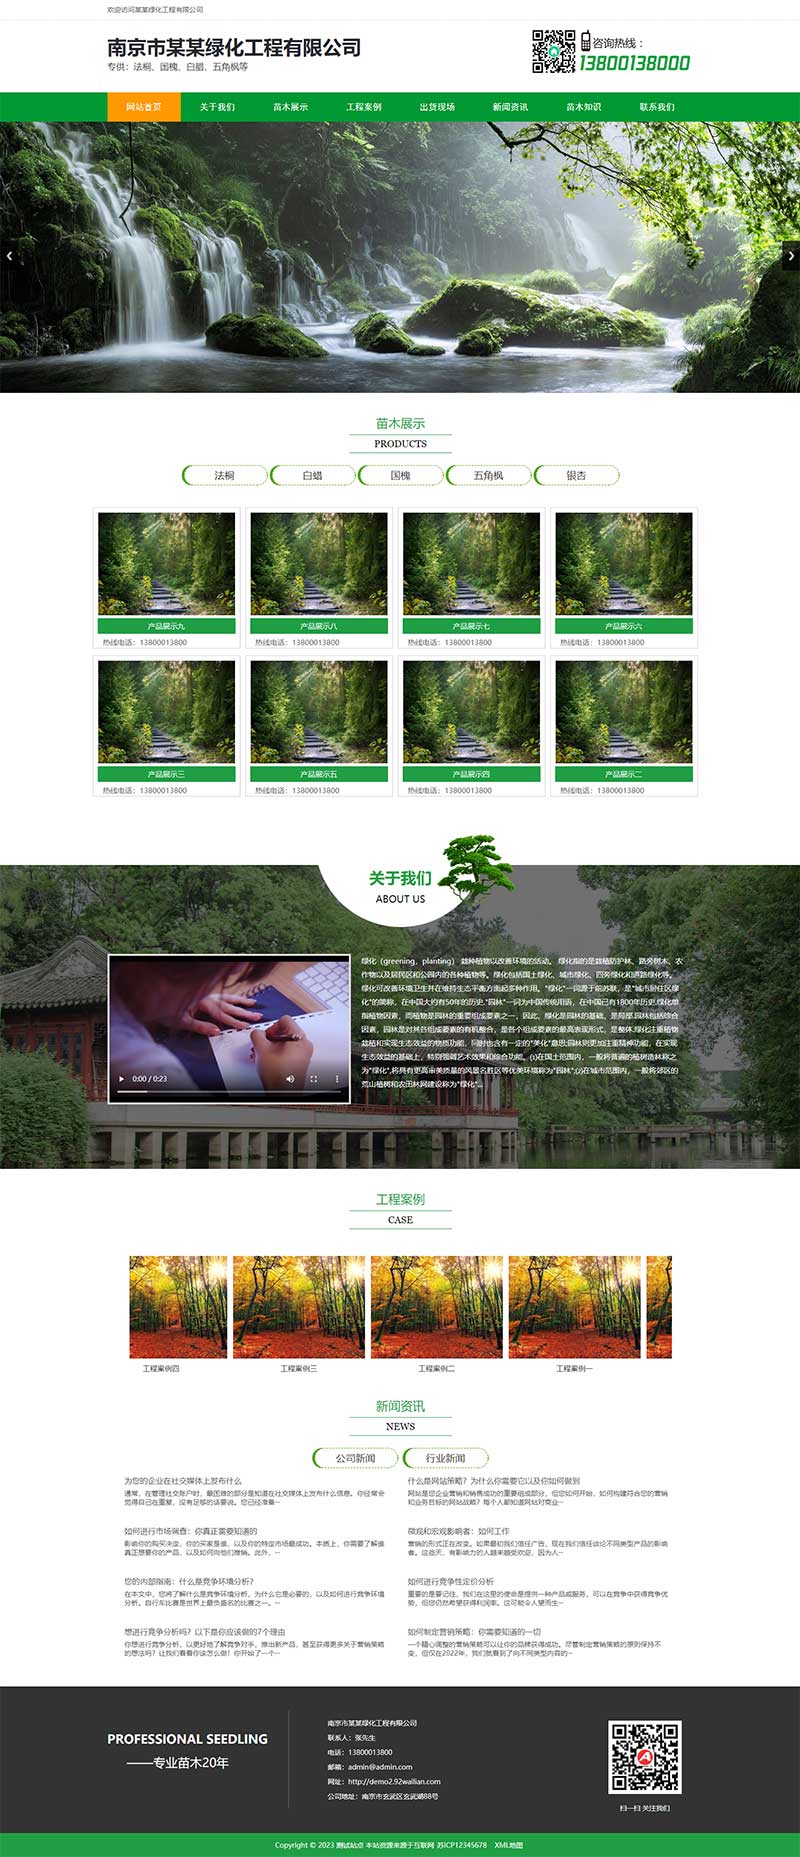 绿色园林苗木类网站模板 农林种植树苗网站源码下载